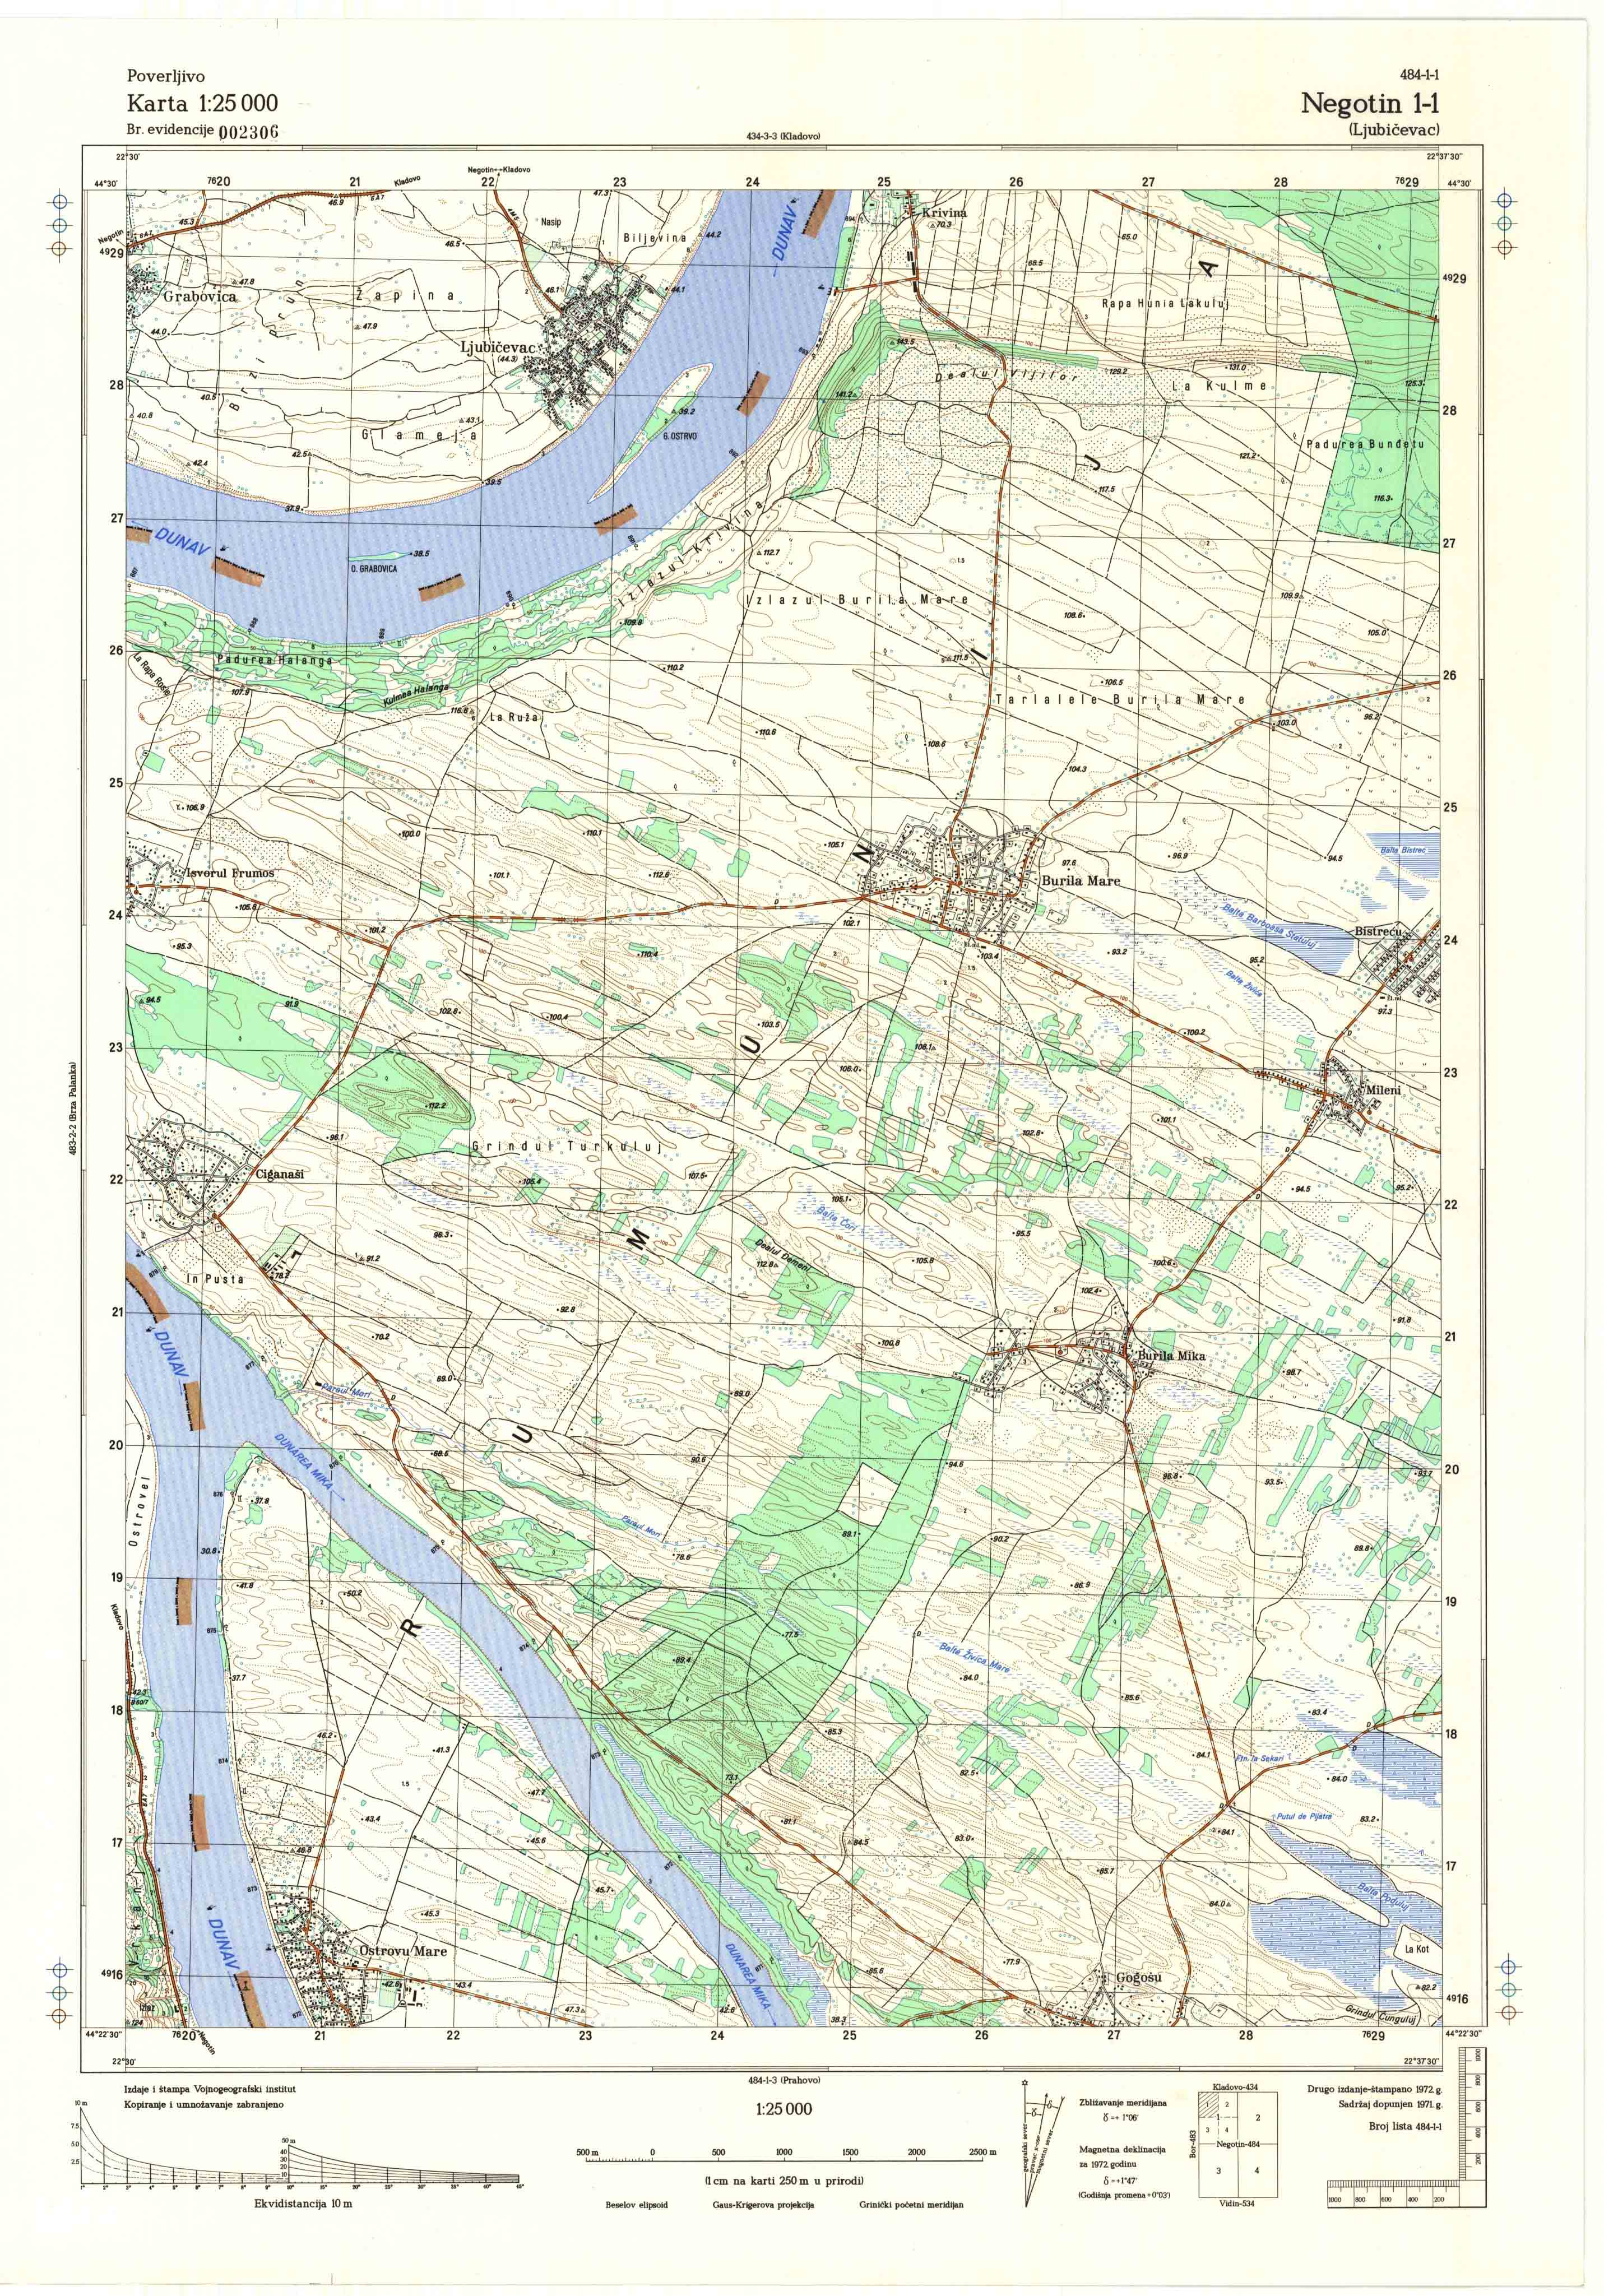  topografska karta srbije 25000 JNA  Negotin